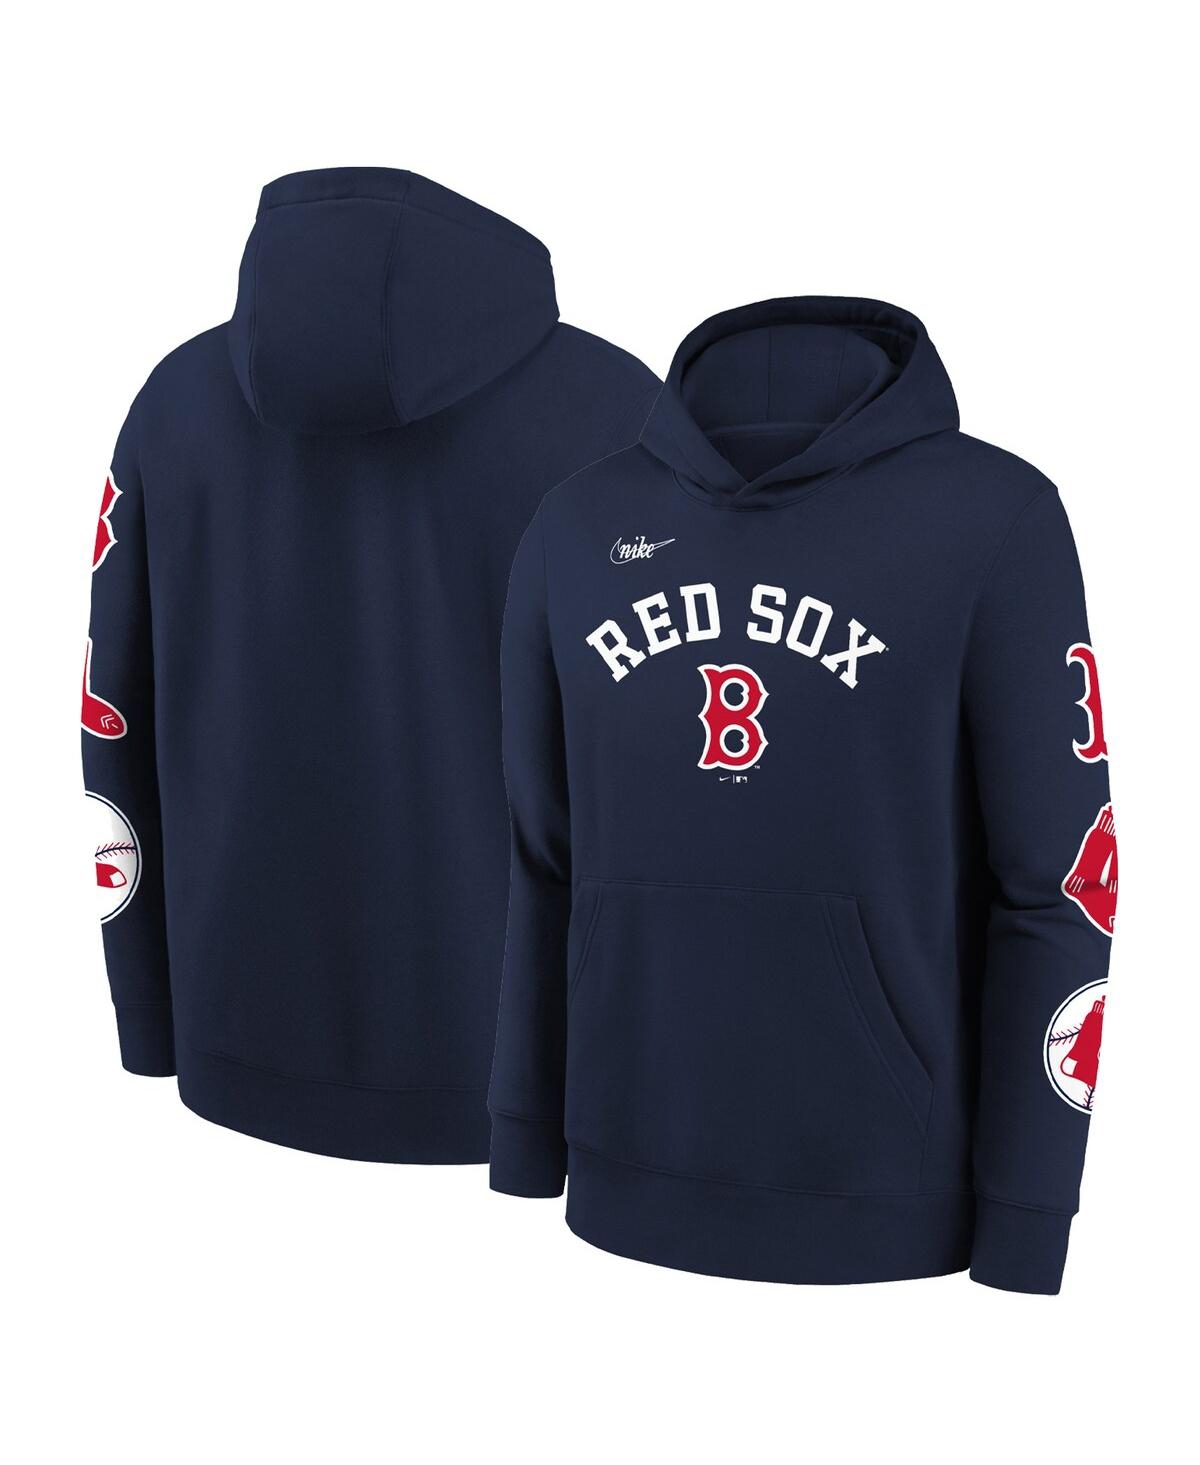 Vintage Nike Red Sox Hoodie Sweatshirt Kids Youth Pullover Navy